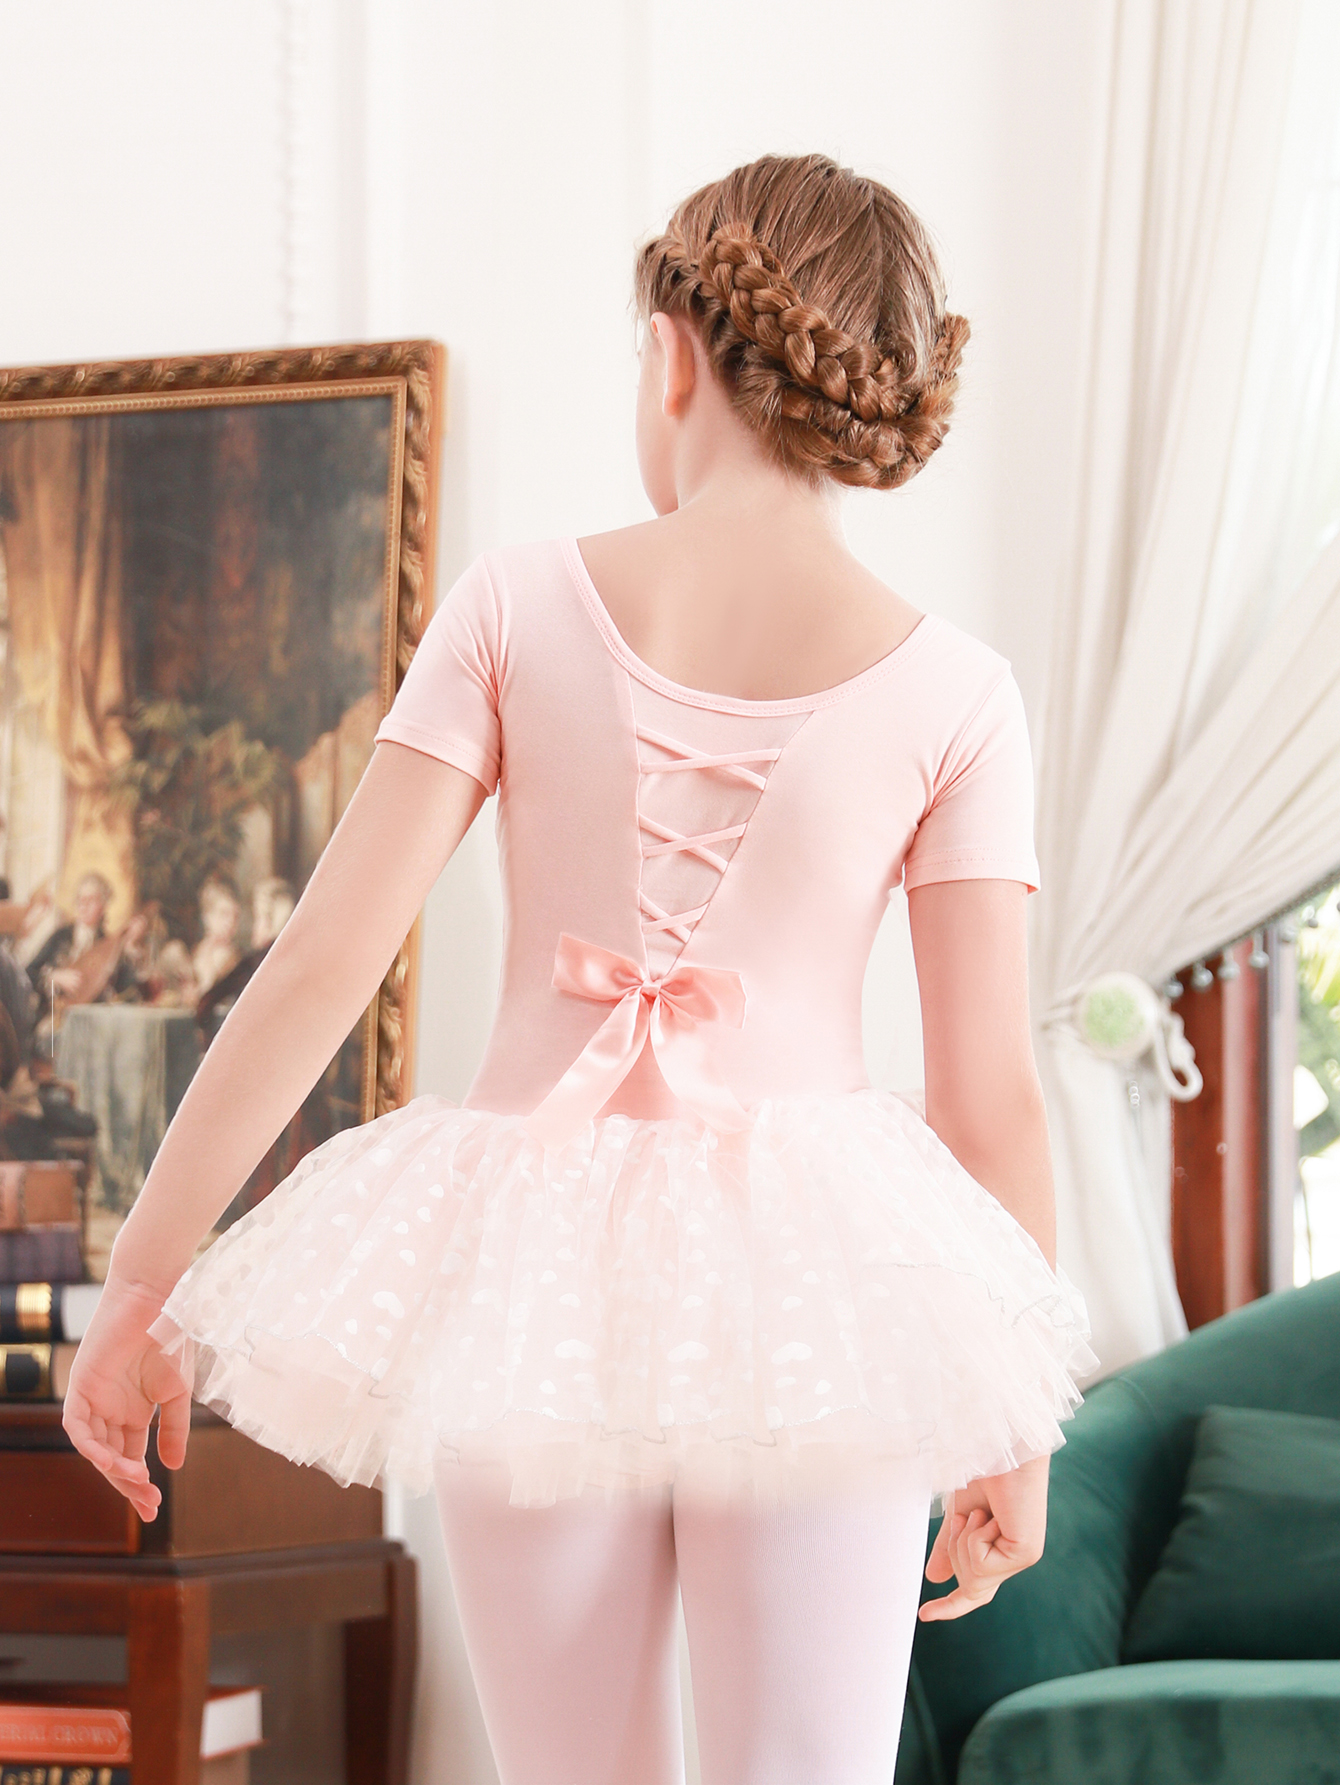 Ballet Skirt For Girls Dance Wear Tutus Dress Clothes For Kids Women  Leotard Short Sleeve Cotton Costumes Dancing Dancewear